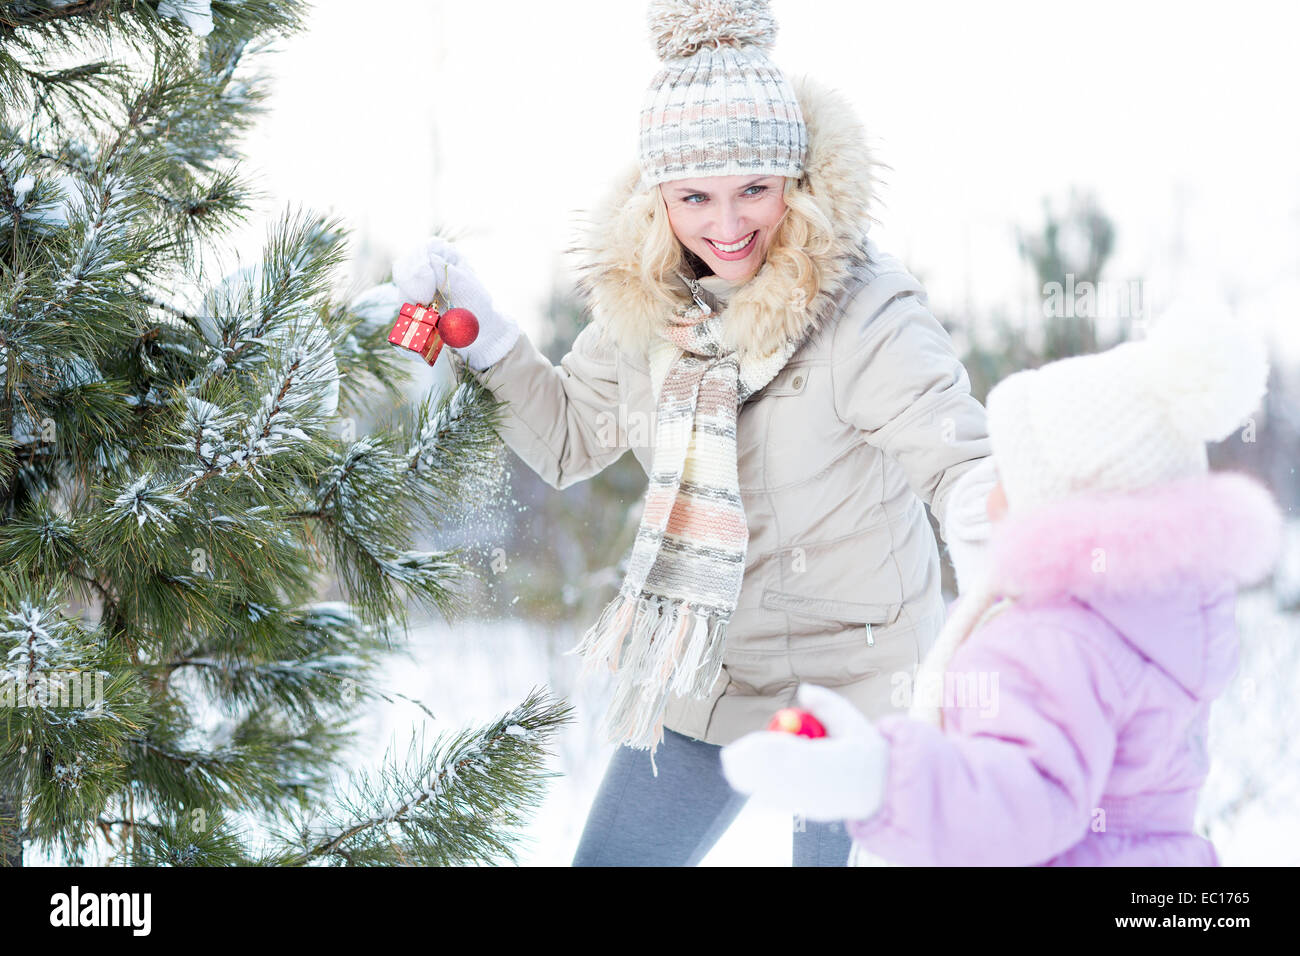 Felice la madre e il bambino che gioca con decorazioni natalizie per esterno Foto Stock